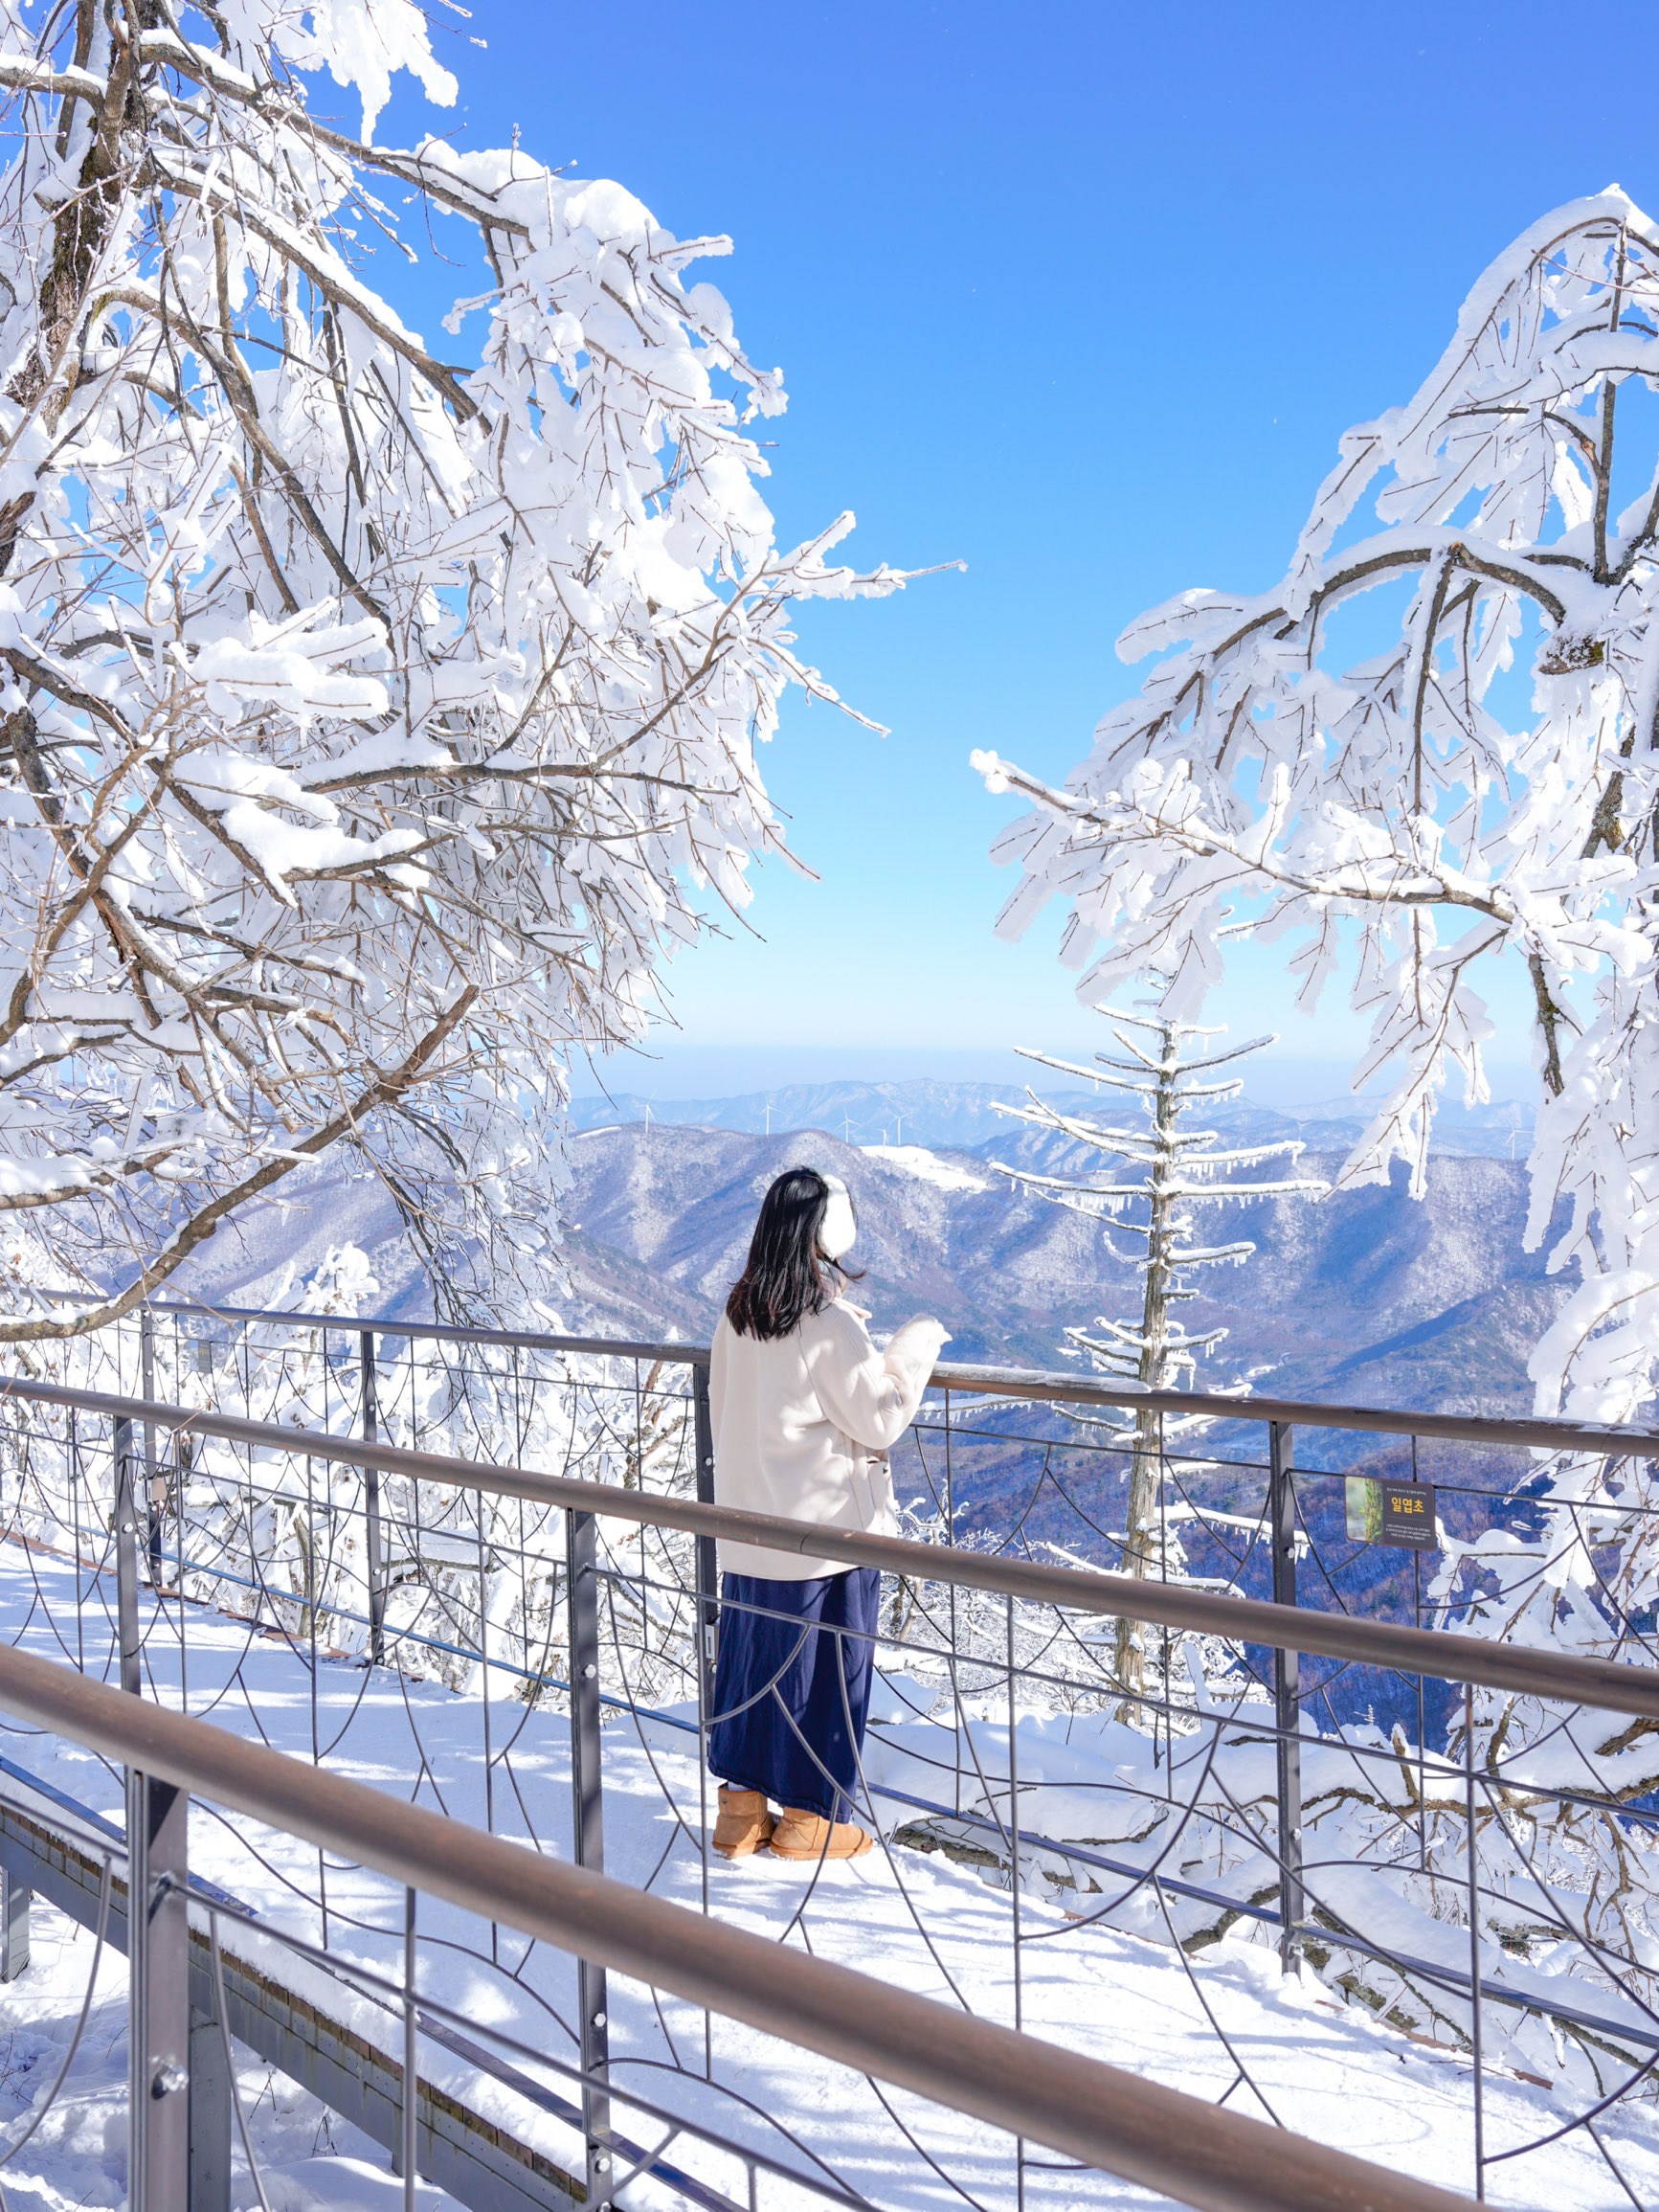 您只能乘坐缆车上山才能看到的史诗级雪山风景🩵